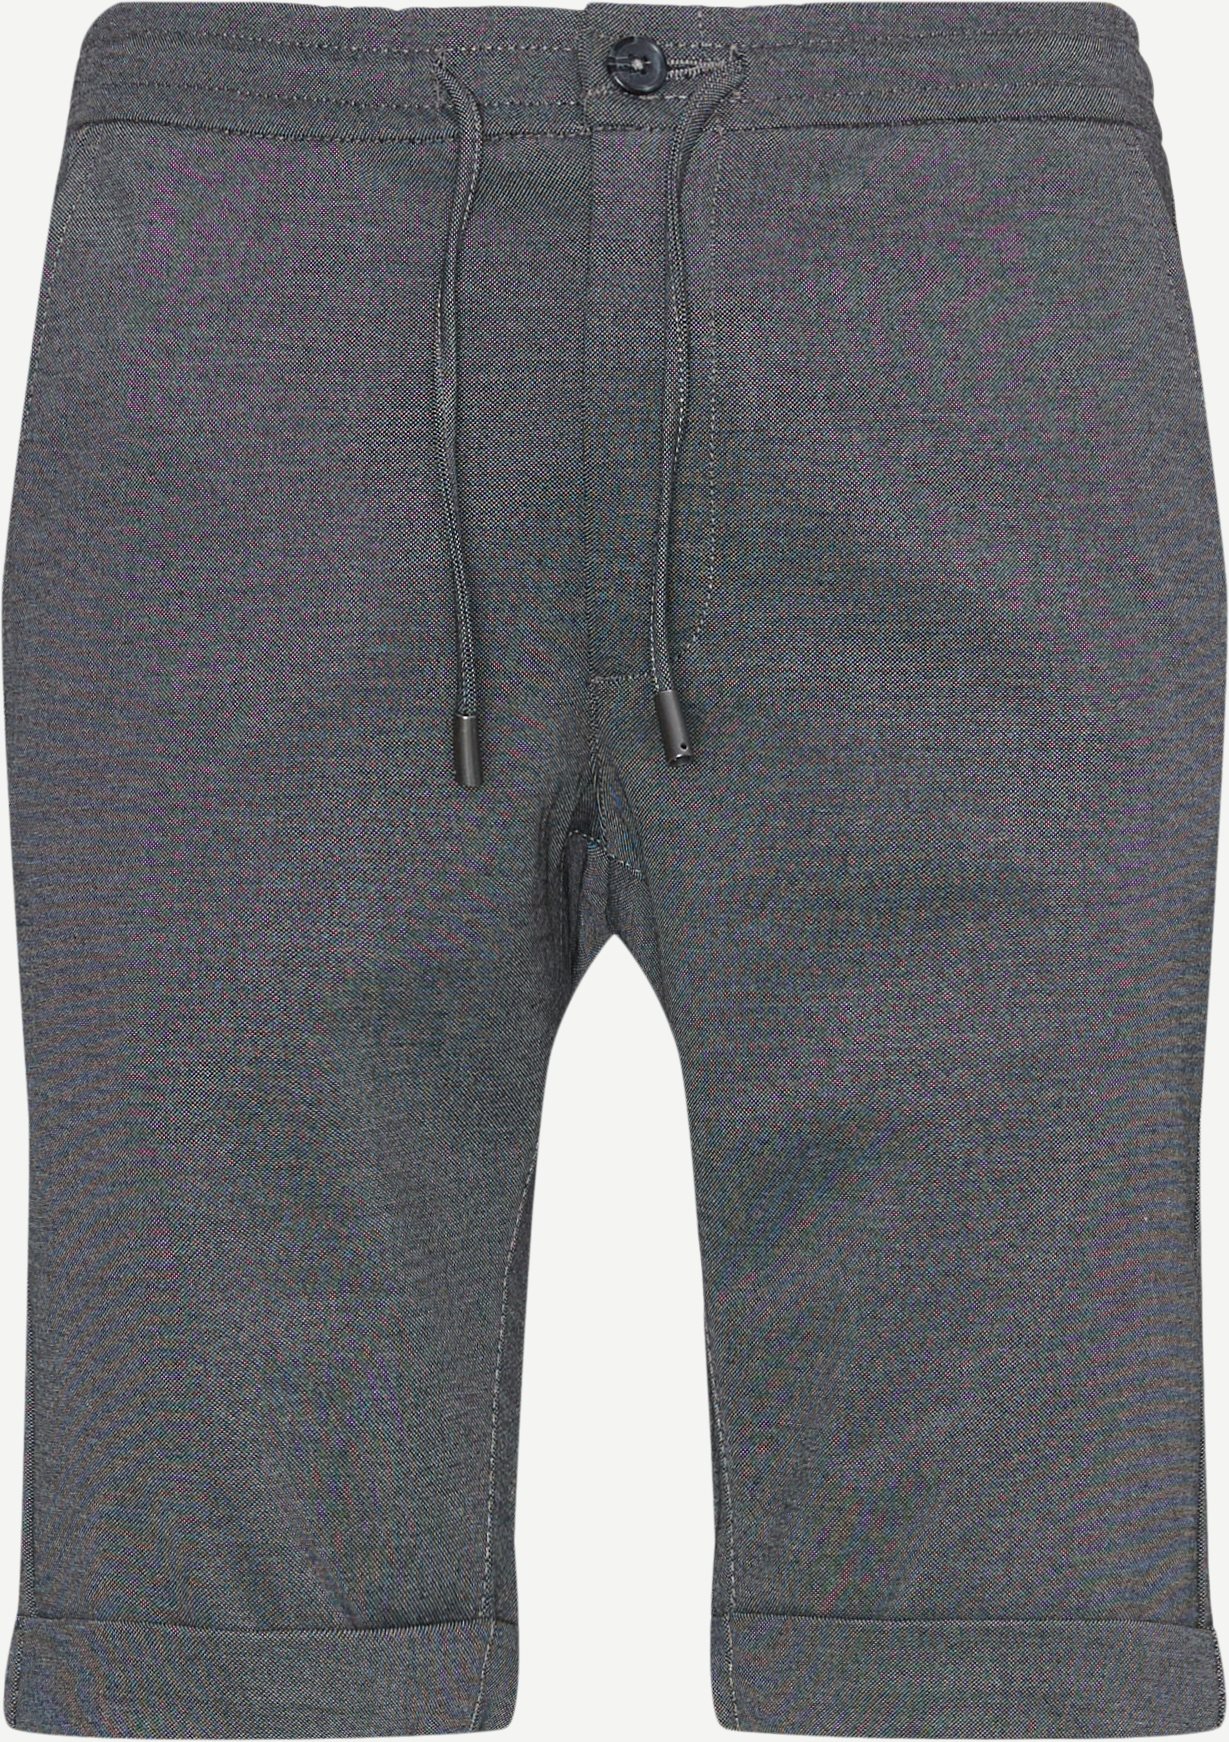 ICELAND Shorts VOLCANIC Grey